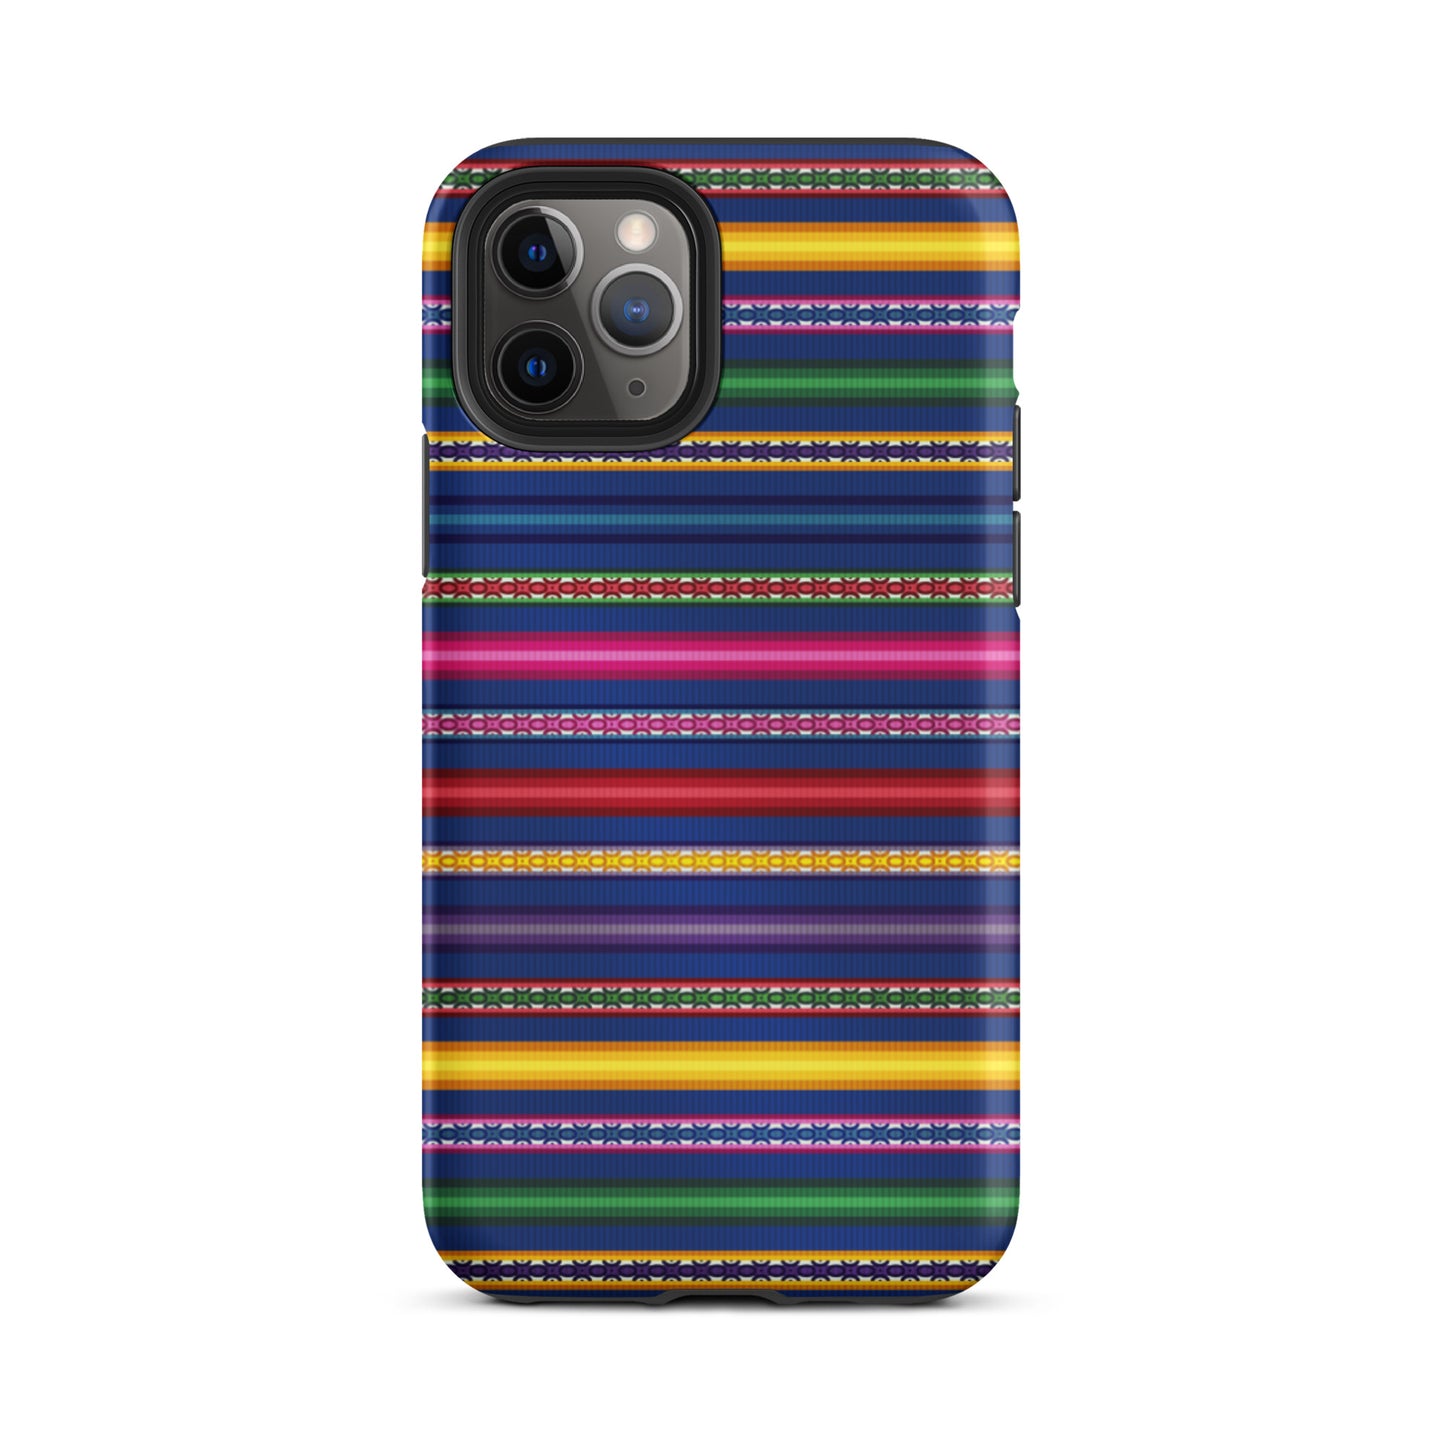 Peruvian Tough iPhone 11 Pro case